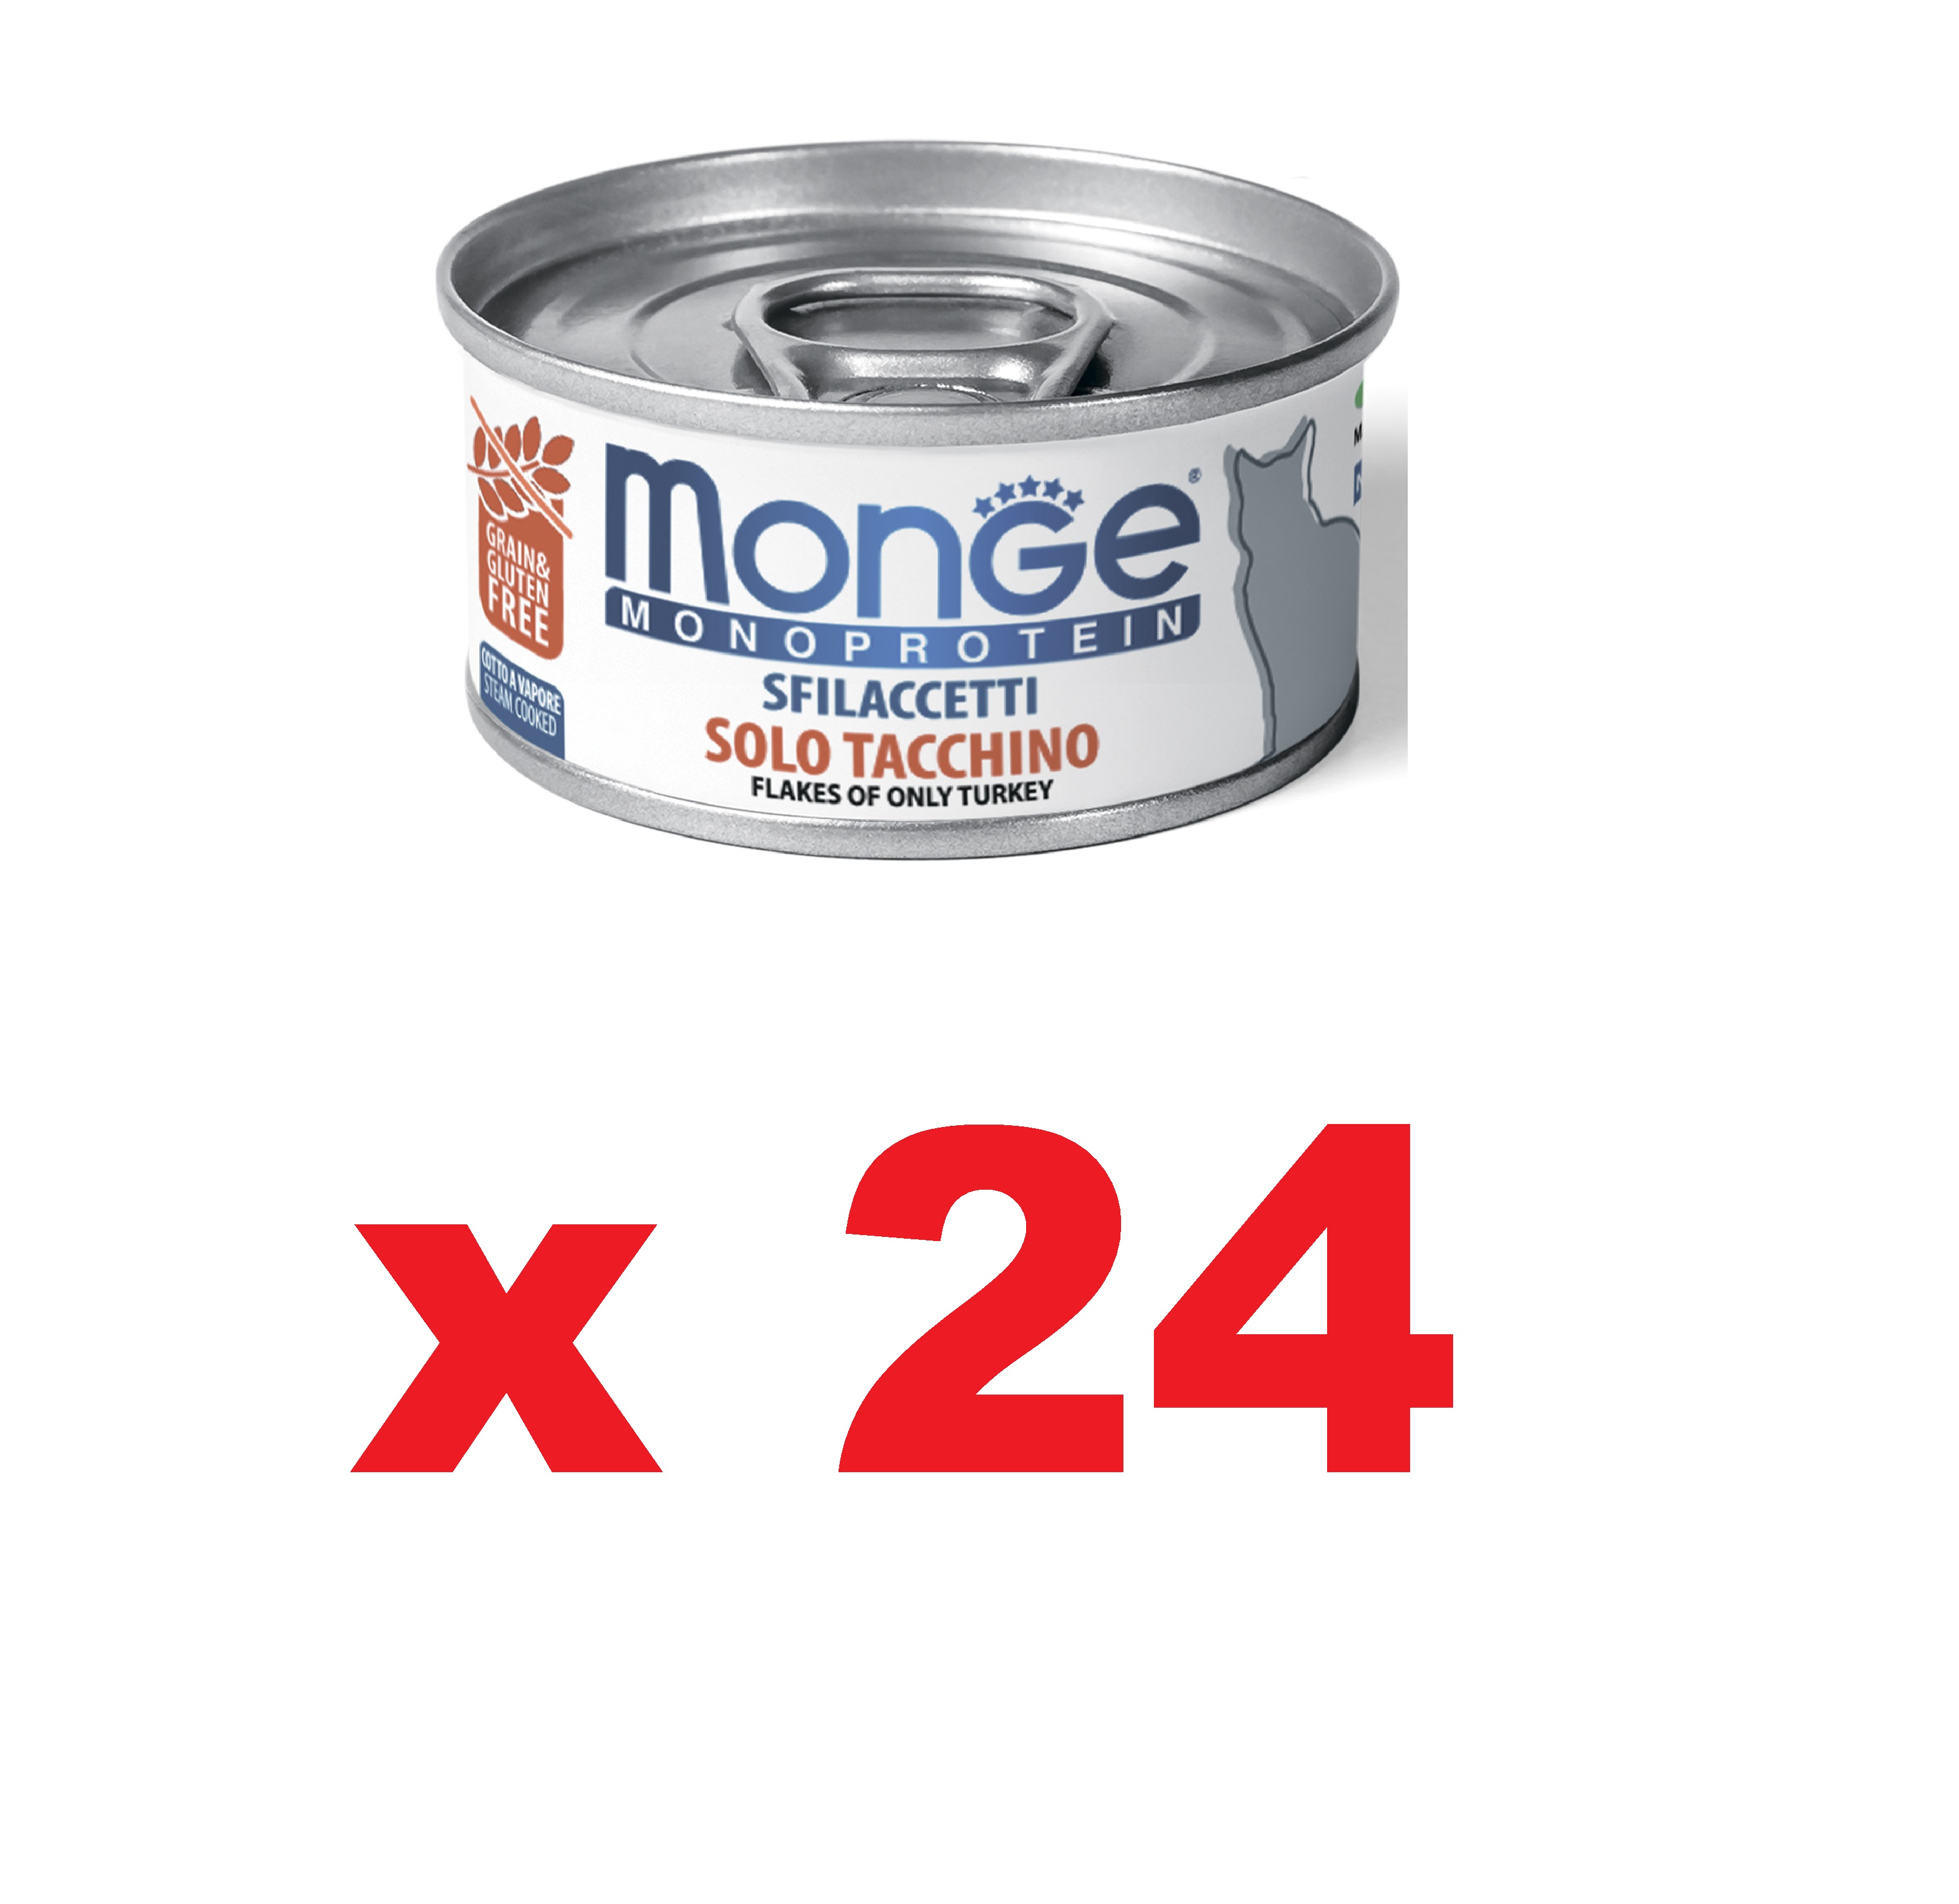 Монж 80гр - Cat Monoprotein - Индейка - Мясные Хлопья - для кошек (Monge) 1кор = 24шт